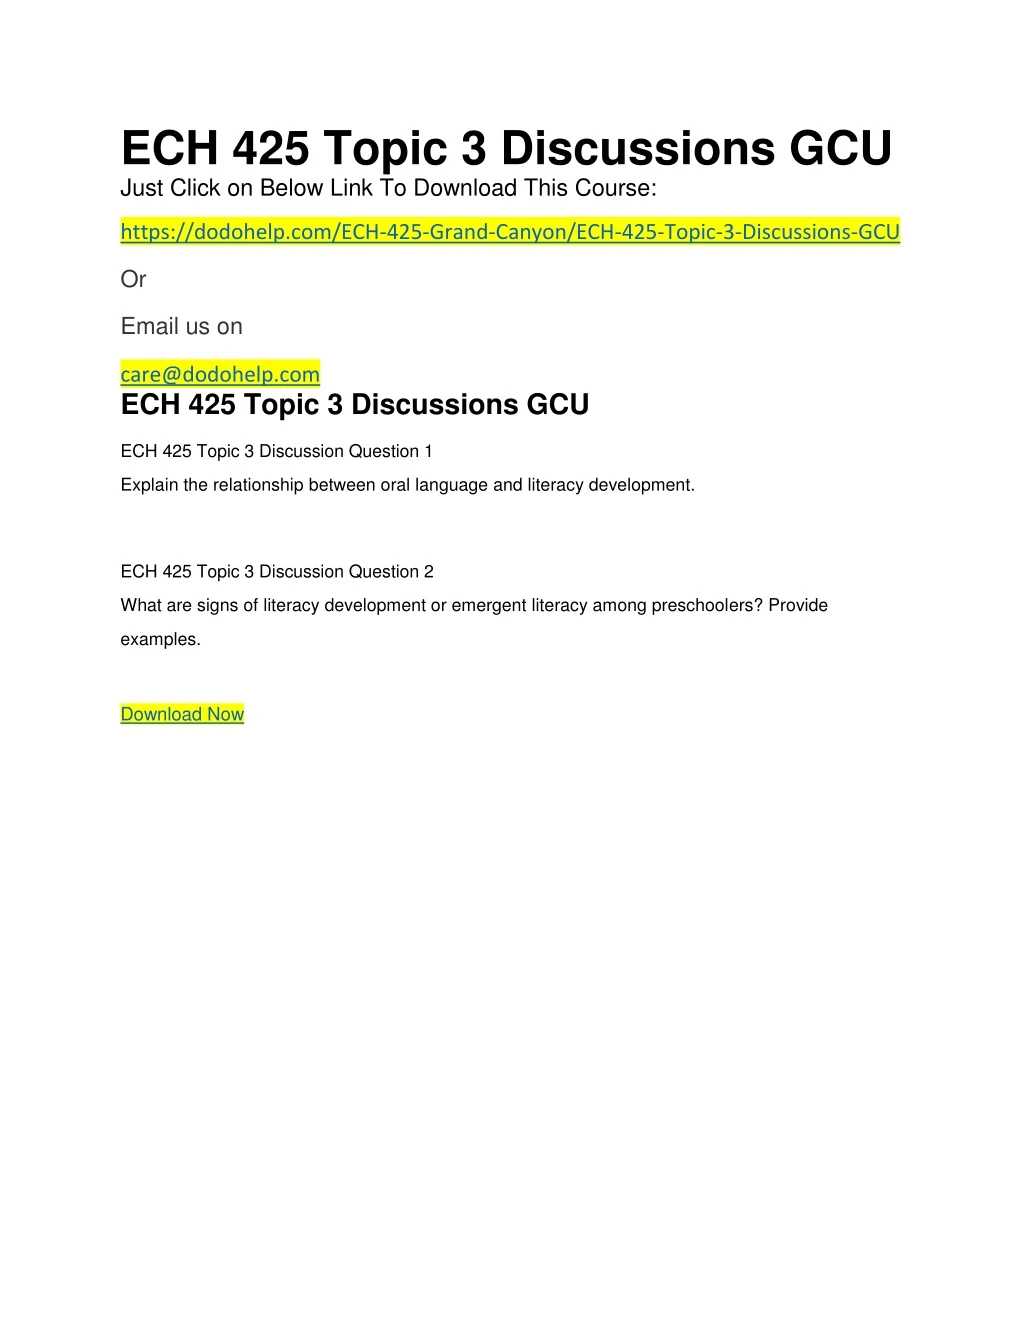 ech 425 topic 3 discussions gcu just click